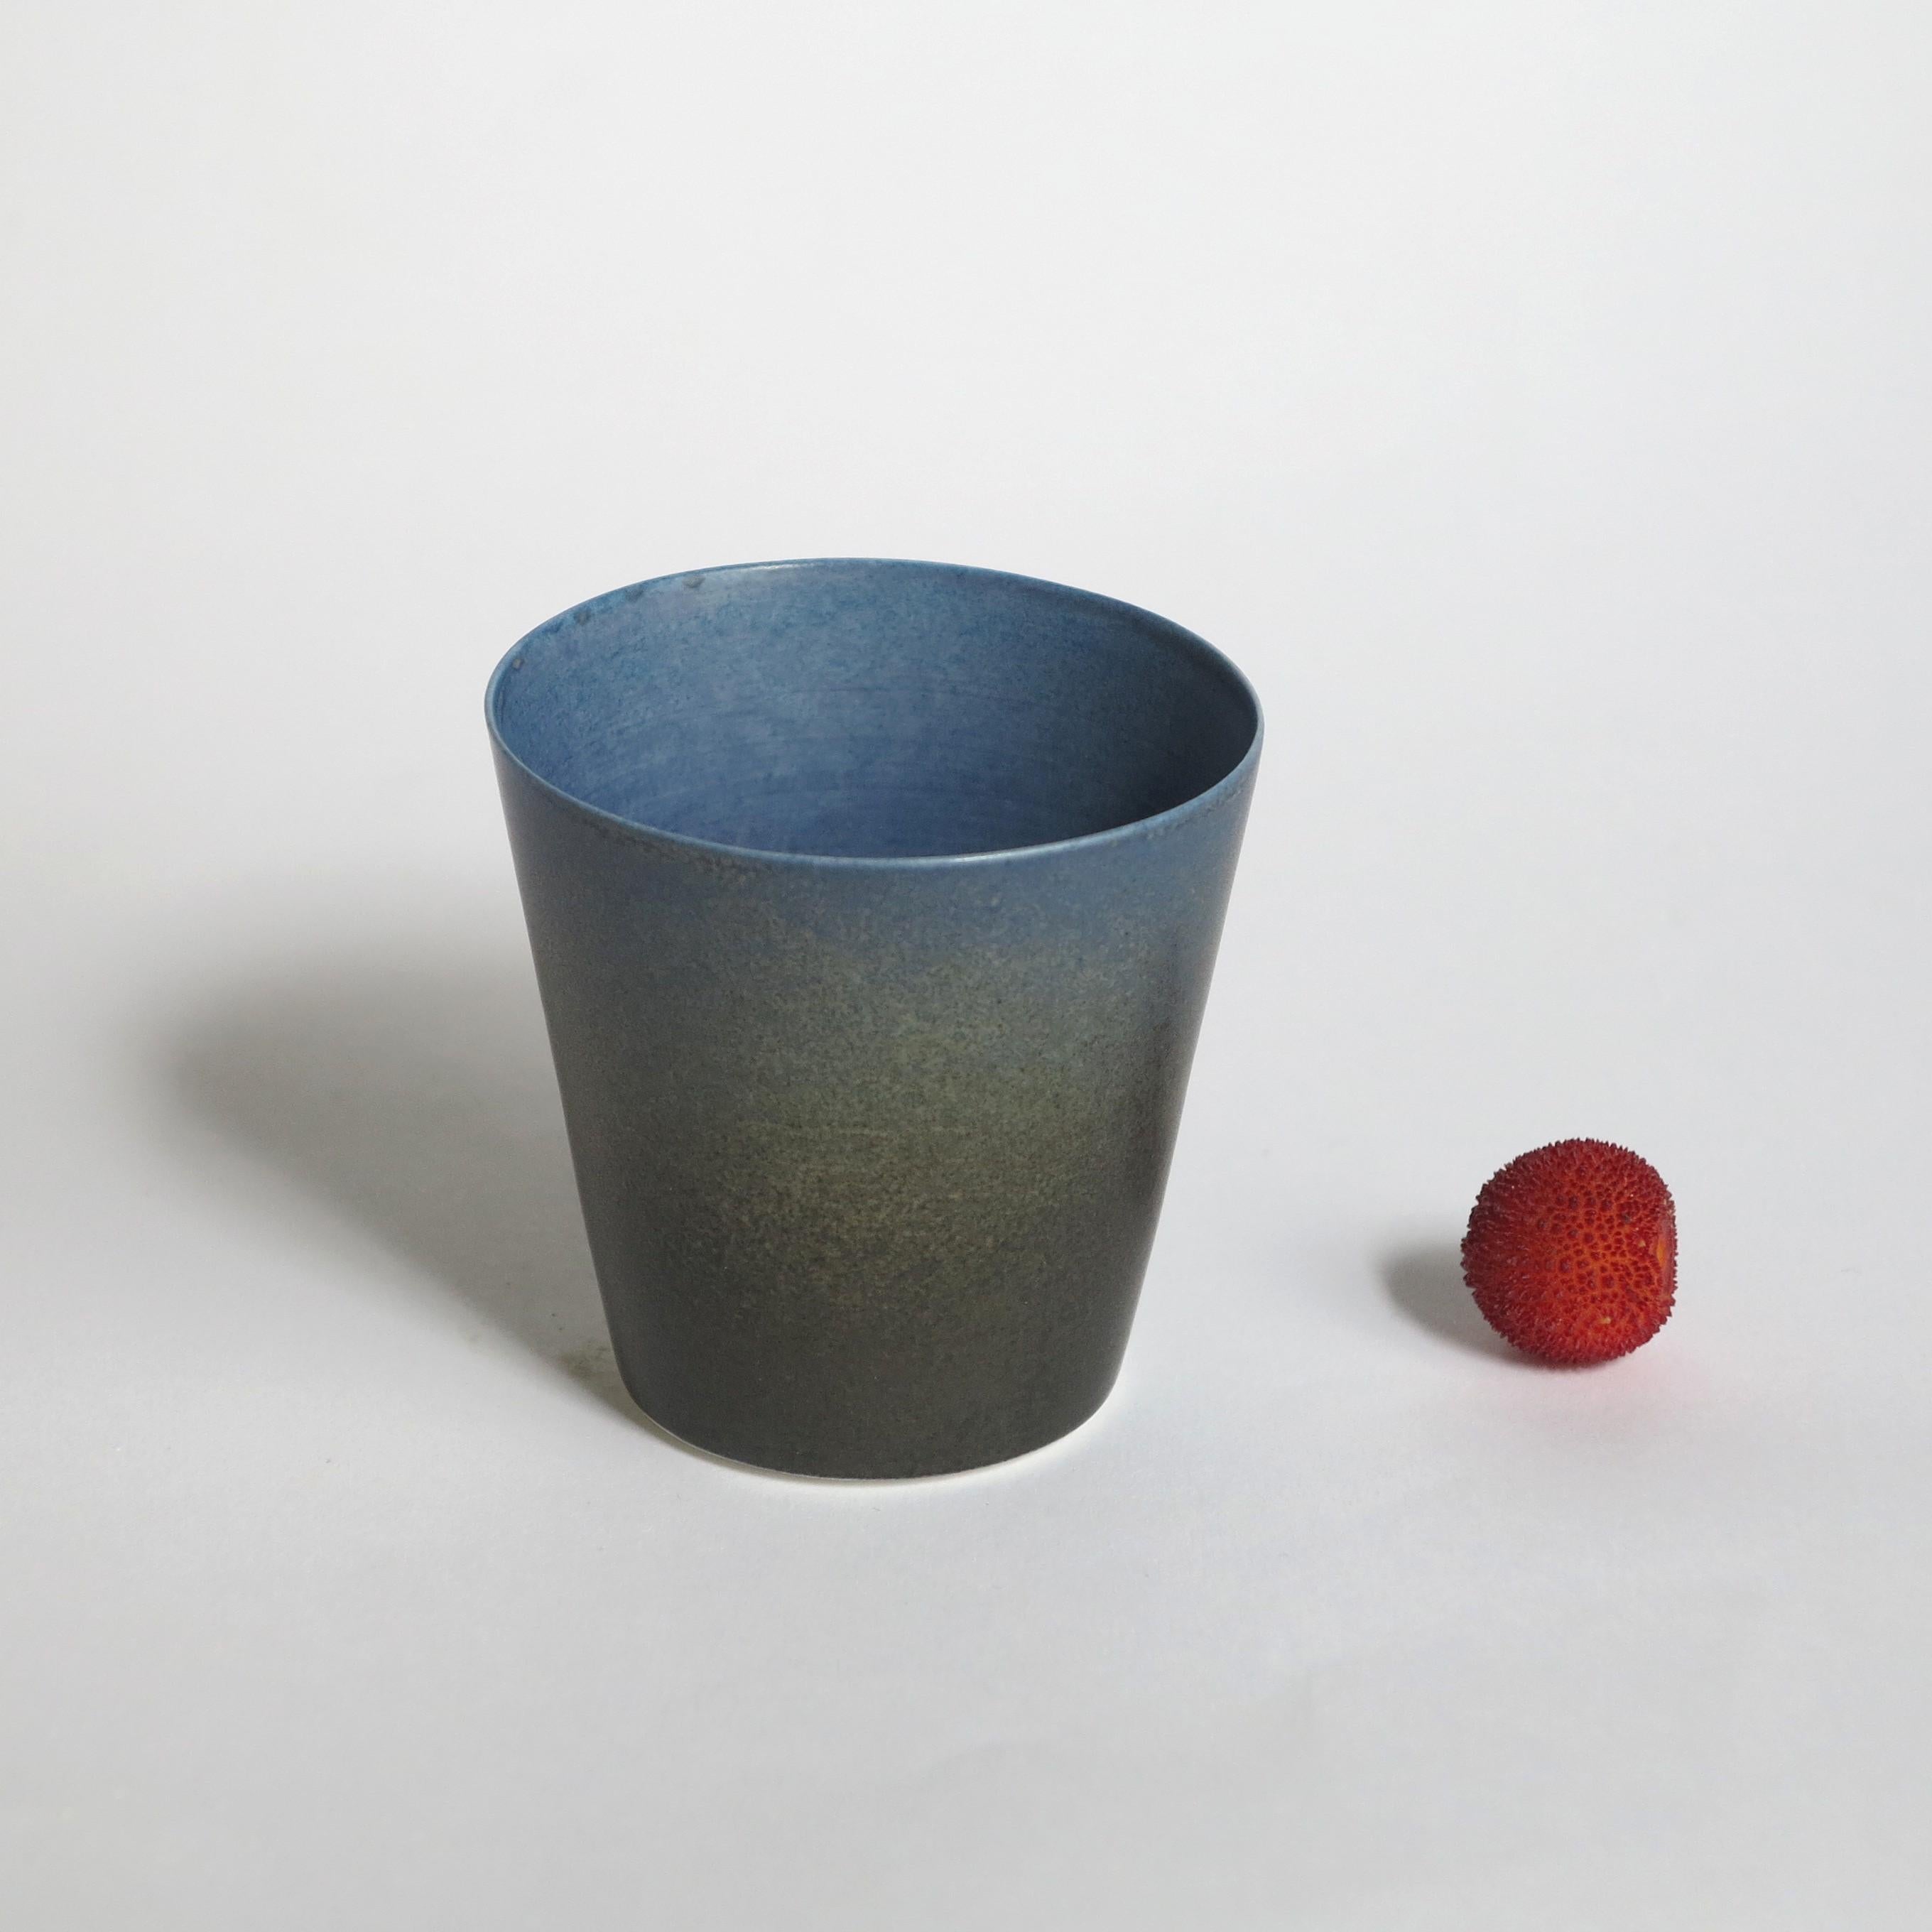 Satz von 4 blauen Porzellan-Kaffeetassen von Cica Gomez
Preis für einen Satz von 4.
Abmessungen: Ø 6,5 x H 6 cm
MATERIAL: Porzellan

Gewöhnliche Objekte. Meine Arbeit ist zunächst von der Suche nach der Linie bestimmt. Diejenige, die er